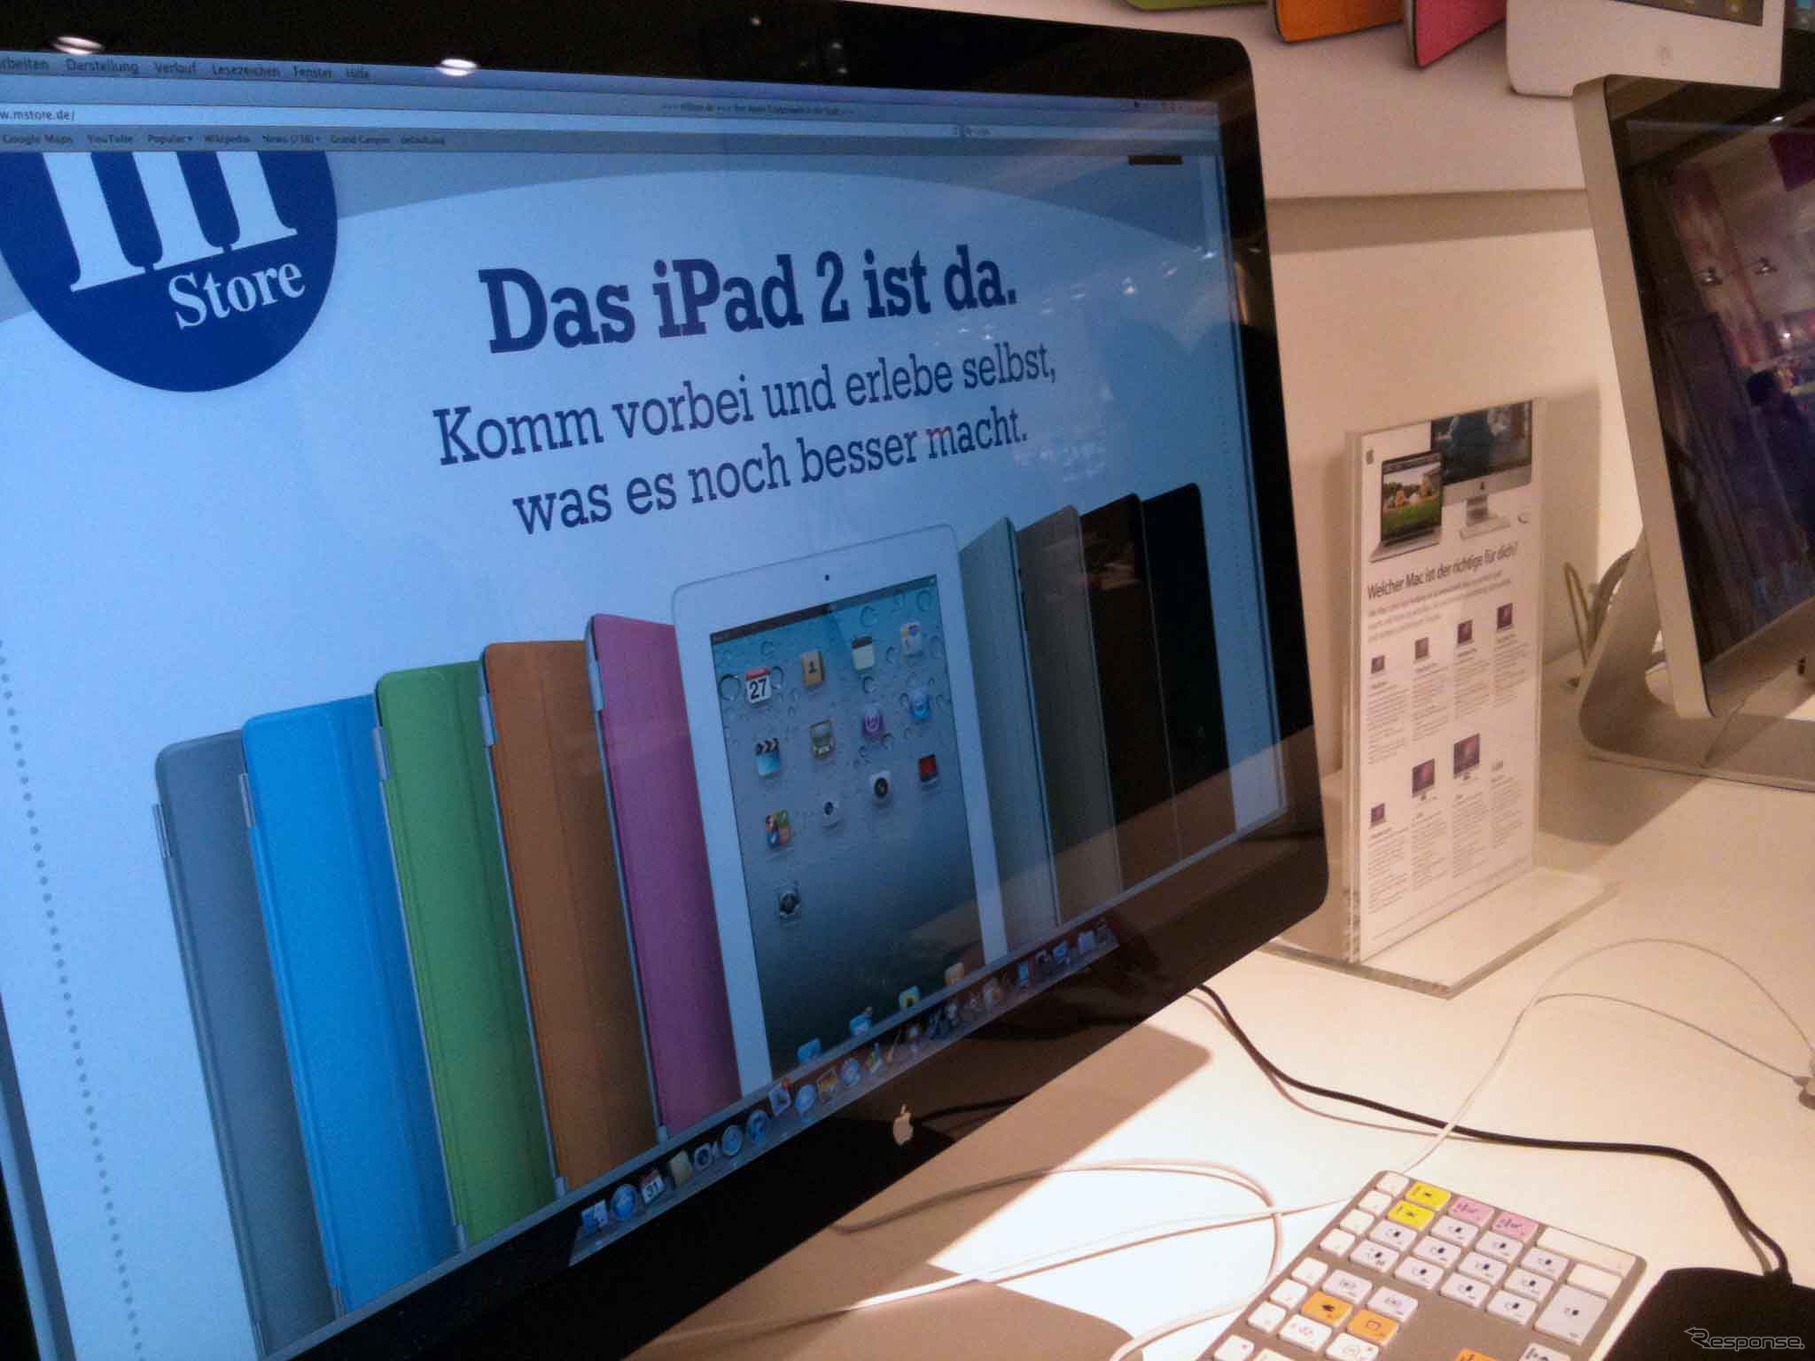 ドイツの店頭で。画面はiPad2のスマートカバーが紹介されているものの、本体は届かず